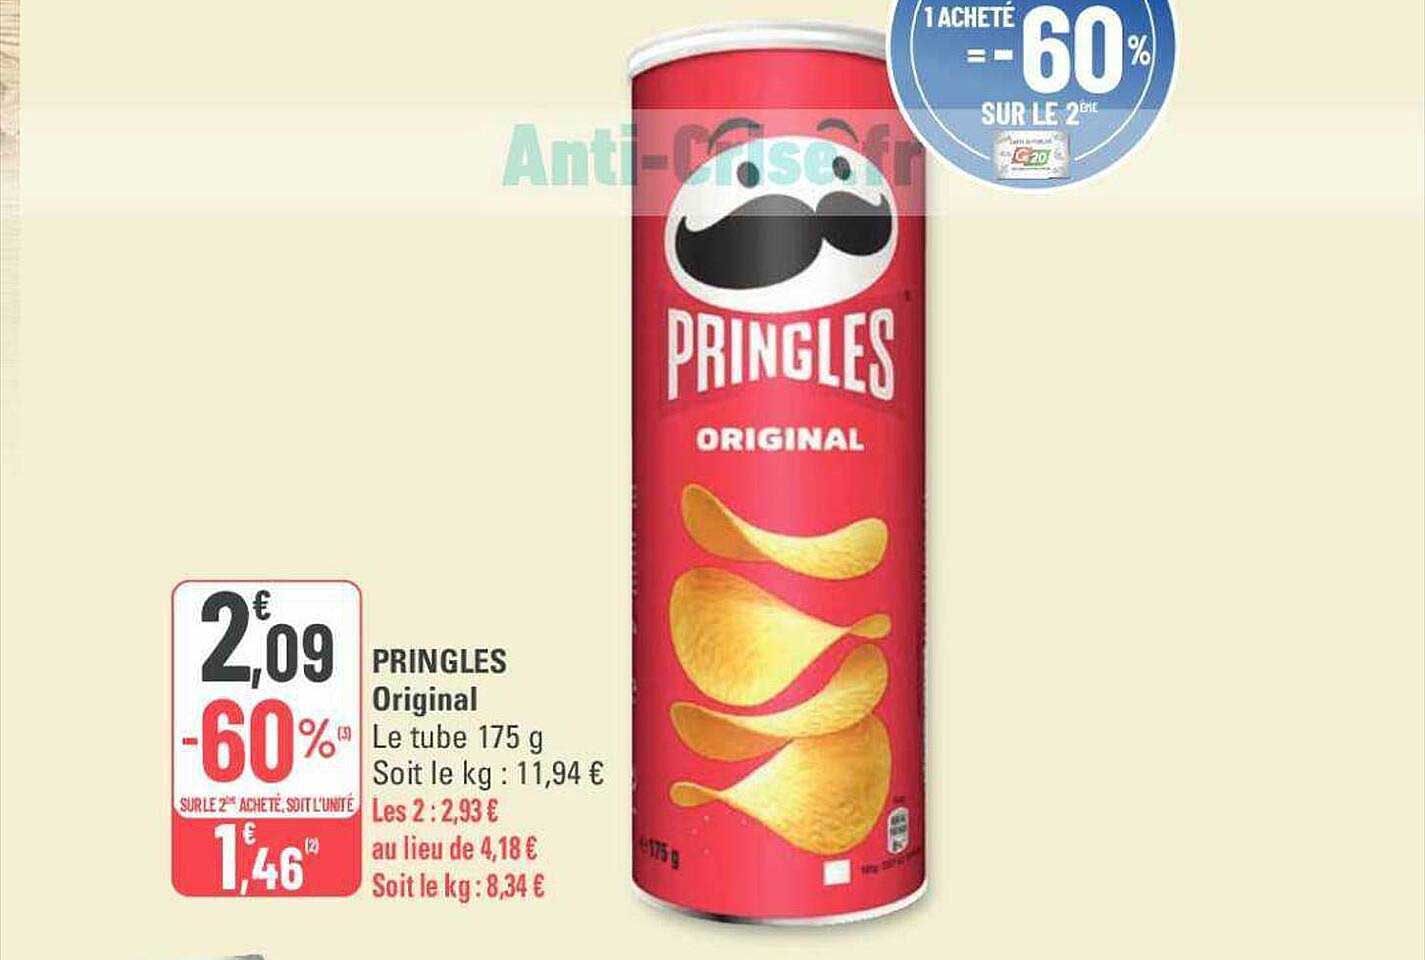 Promo Pringles Original chez G20 - iCatalogue.fr